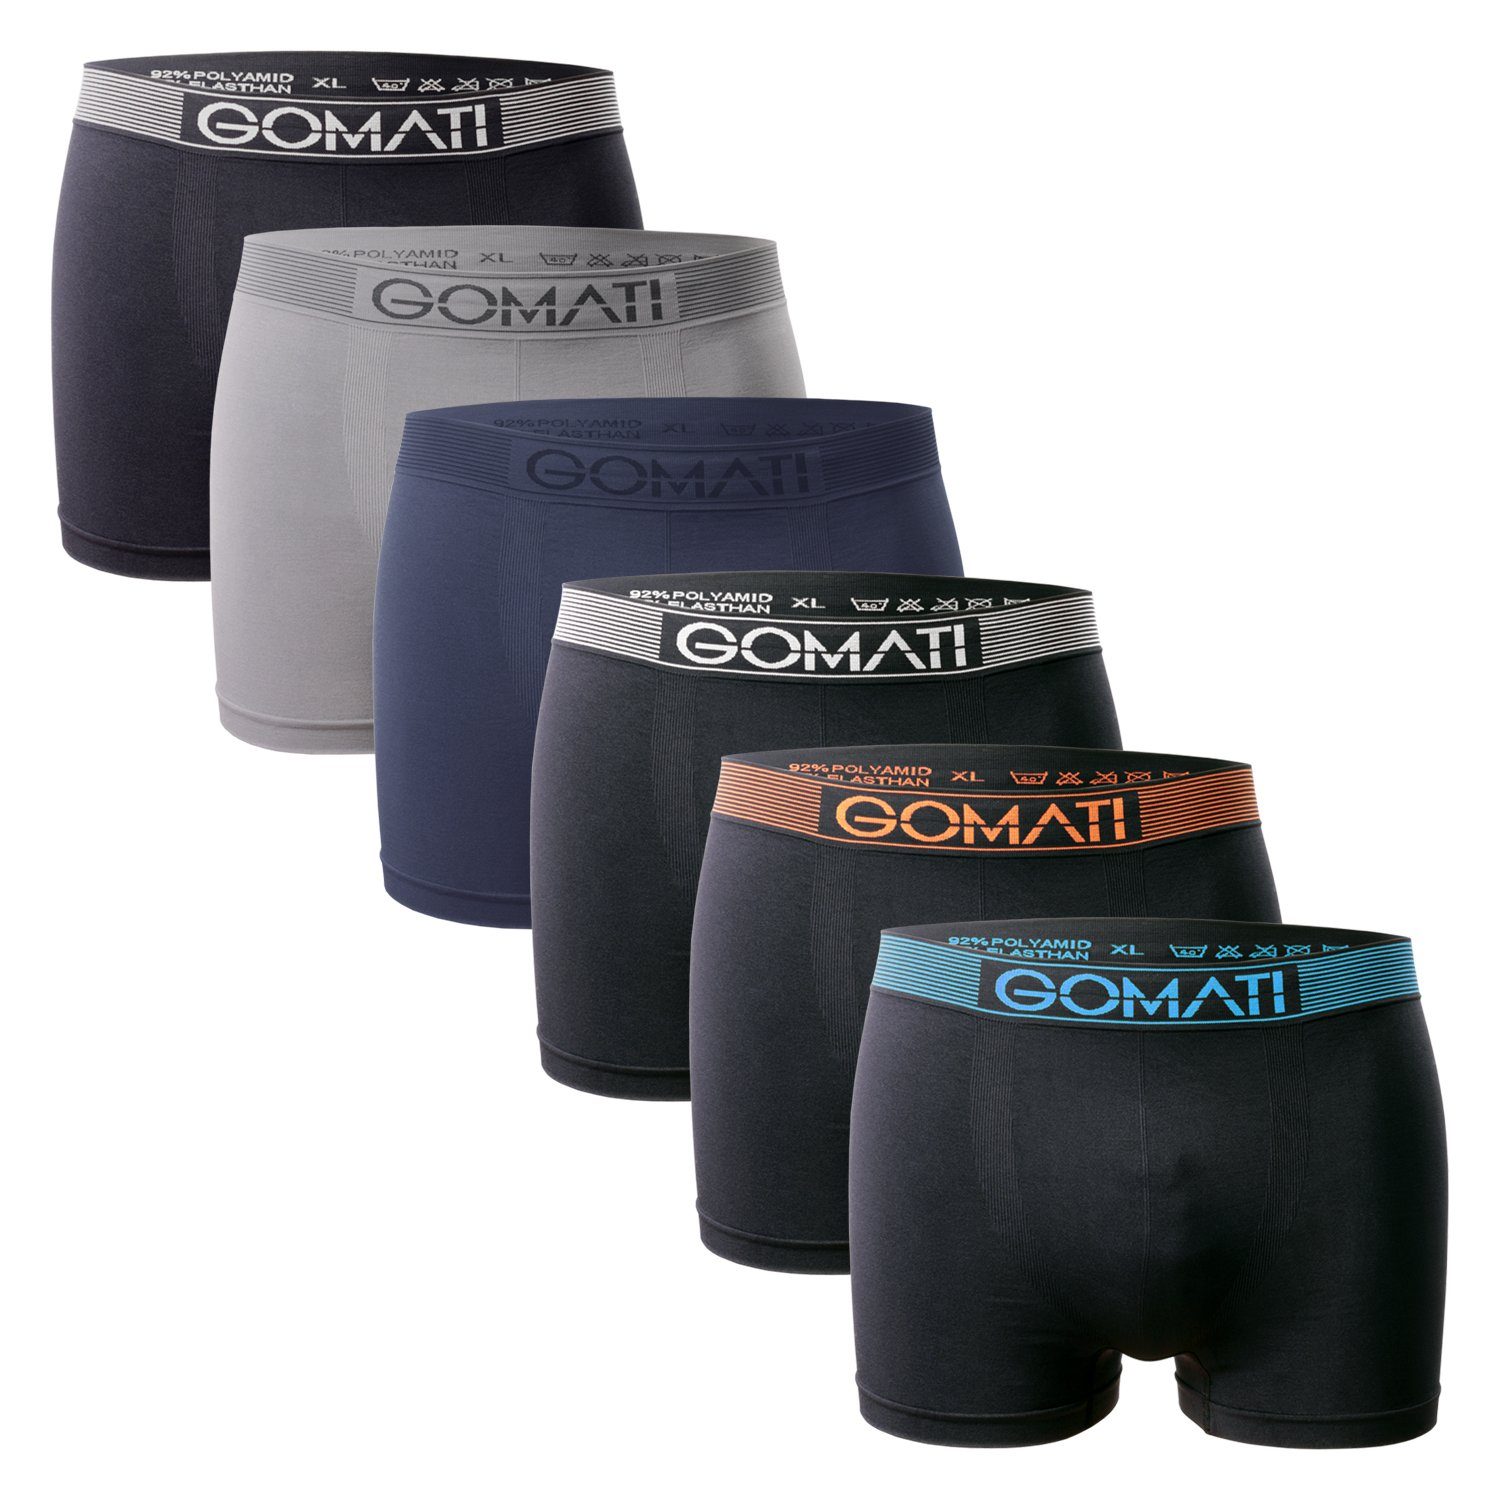 Gomati Boxershorts Herren Seamless Pants / Pack) Black Grey (6er Microfaser-Elasthan Boxershorts